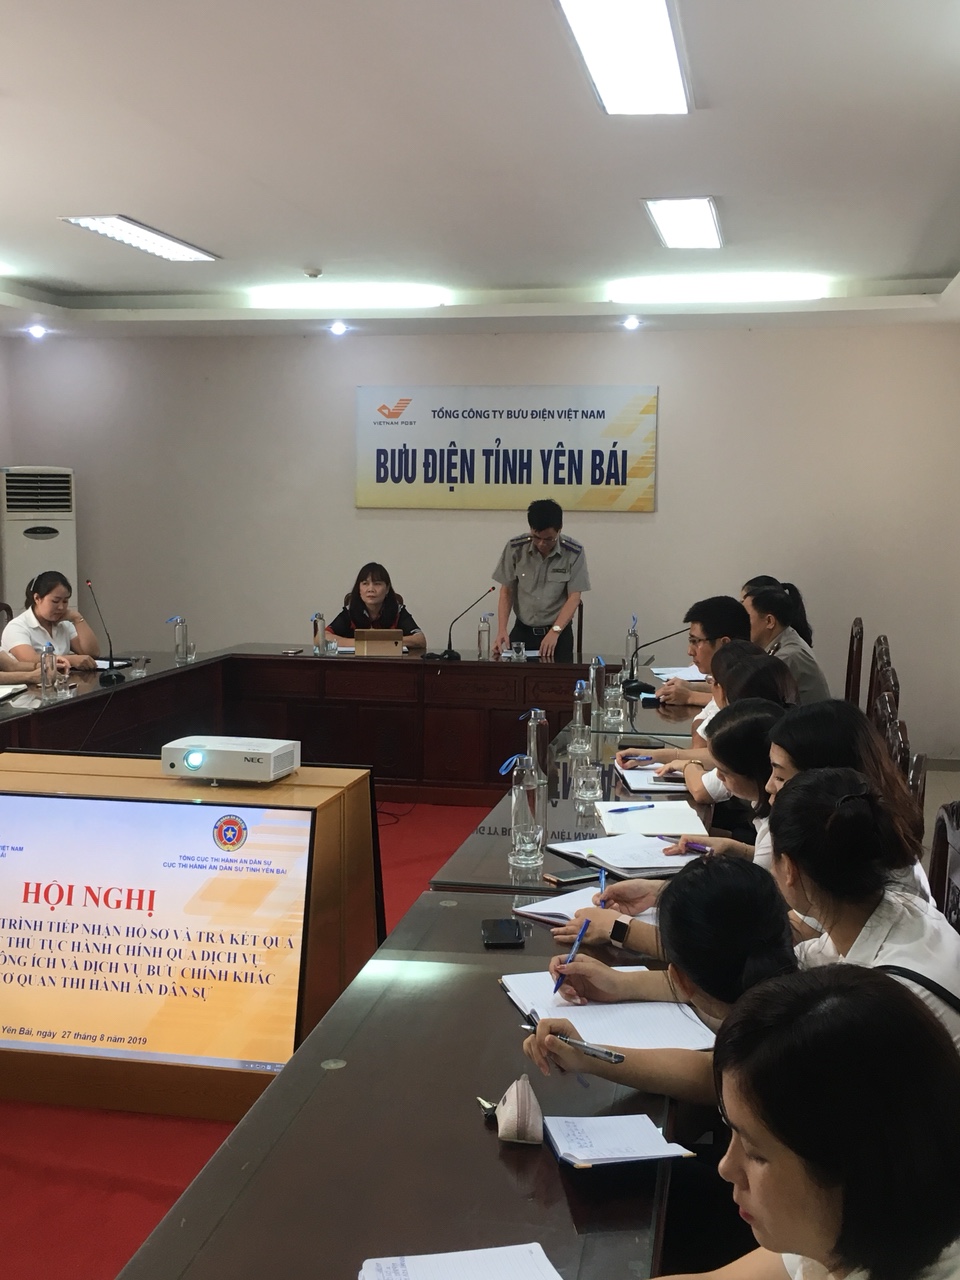 Hội nghị tập huấn phối hợp giữa Cục THADS tỉnh Yên Bái và Bưu điện tỉnh Yên Bái